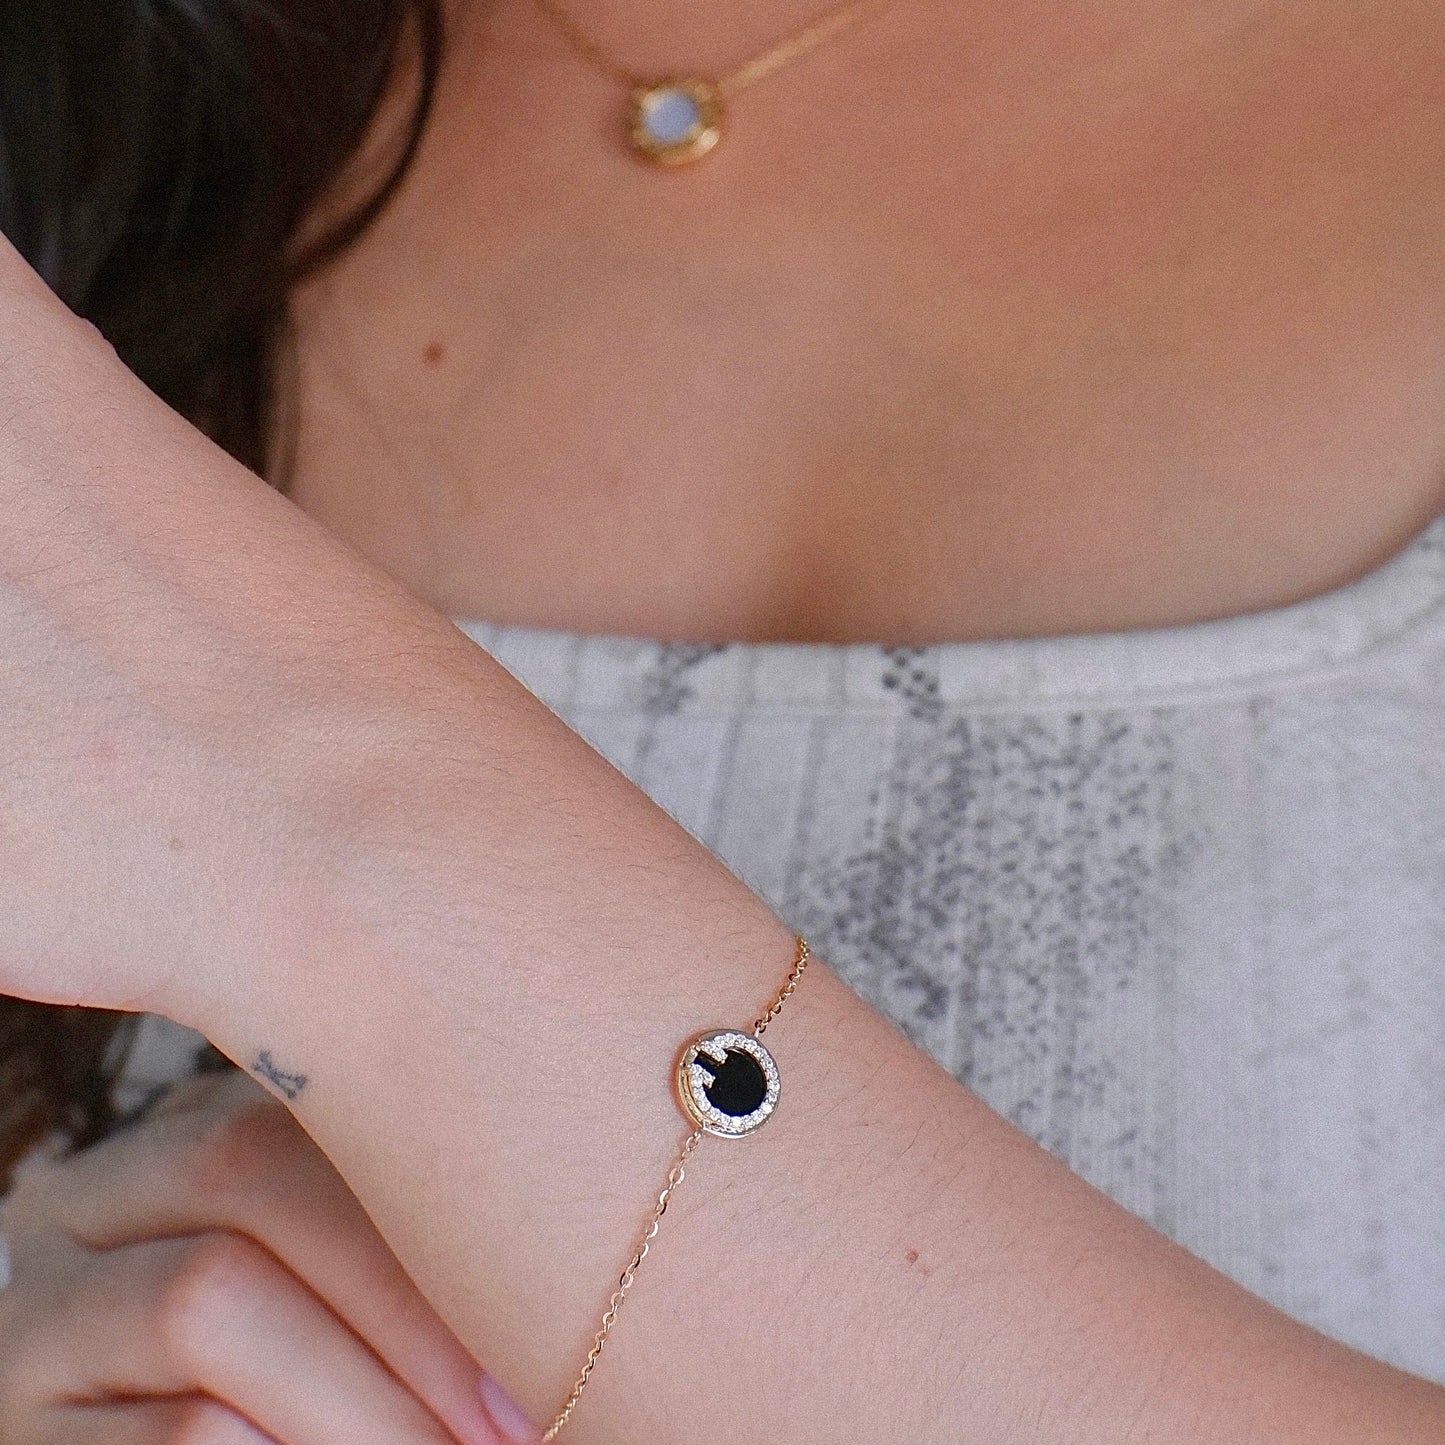 The Pave Designer Black Onyx Bracelet in Solid Gold